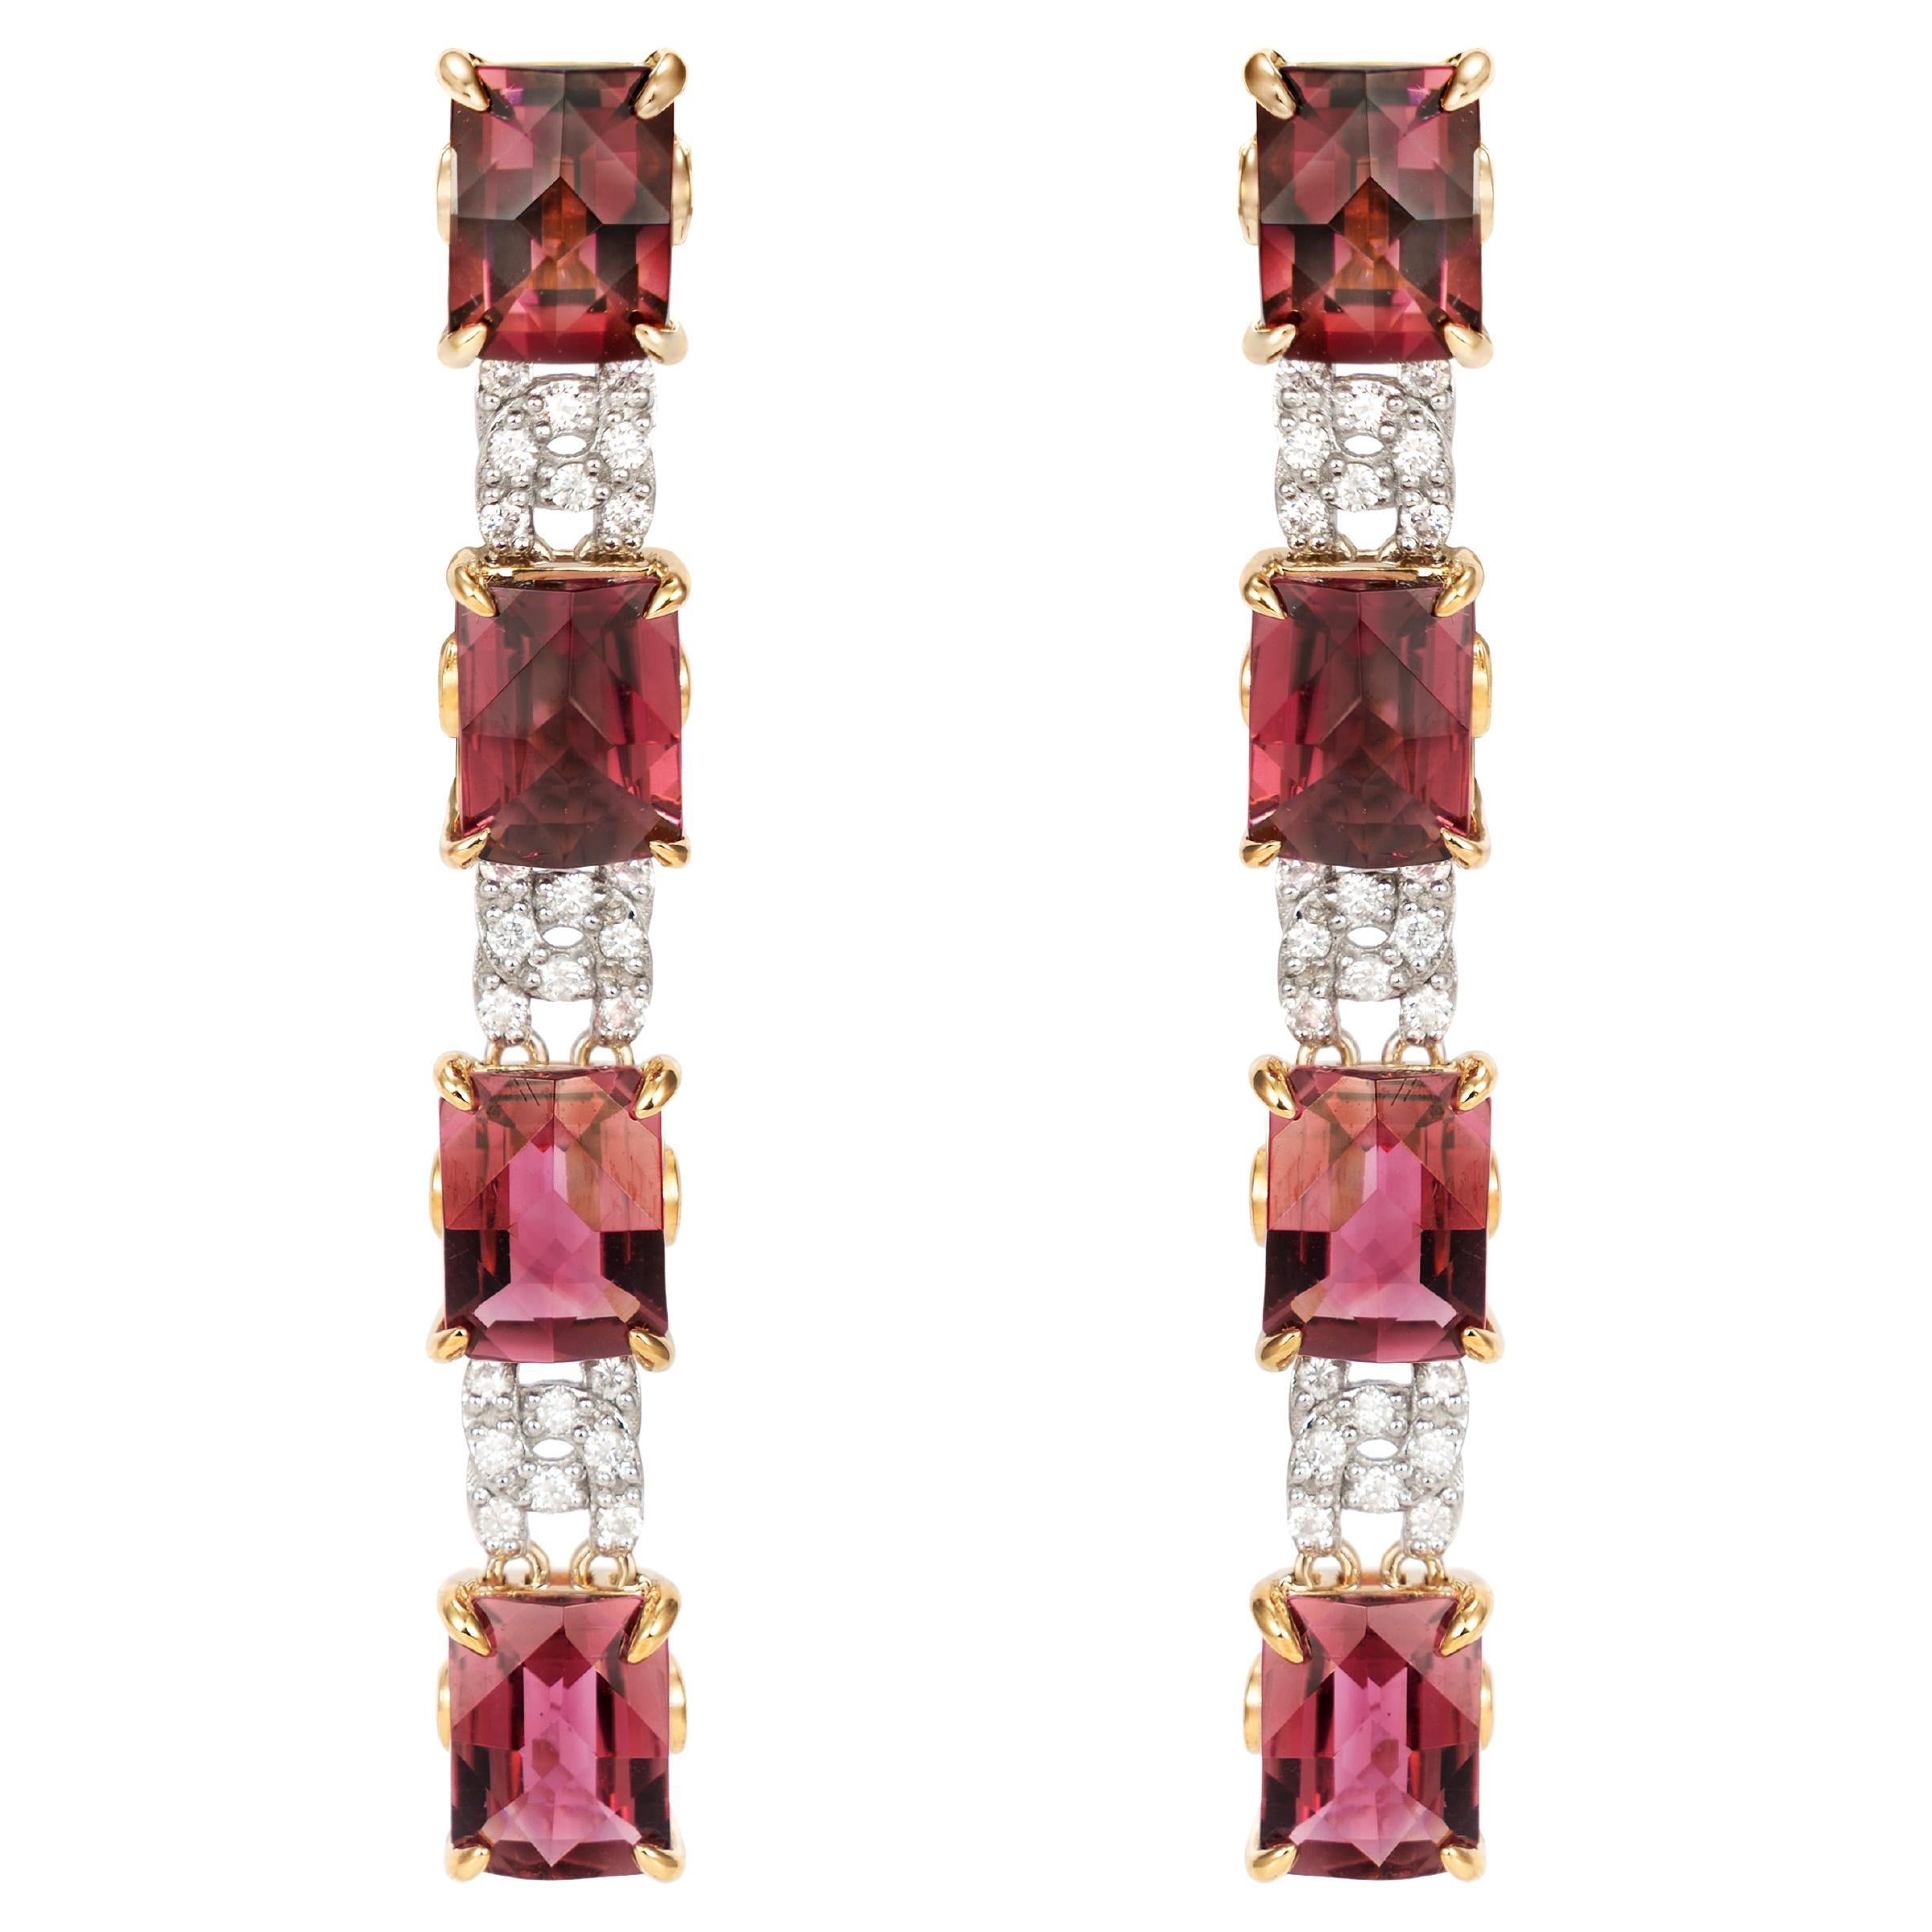 Fancy Cut Ombre Pink Tourmaline Earrings with Diamond in 18 Karat Gold For Sale